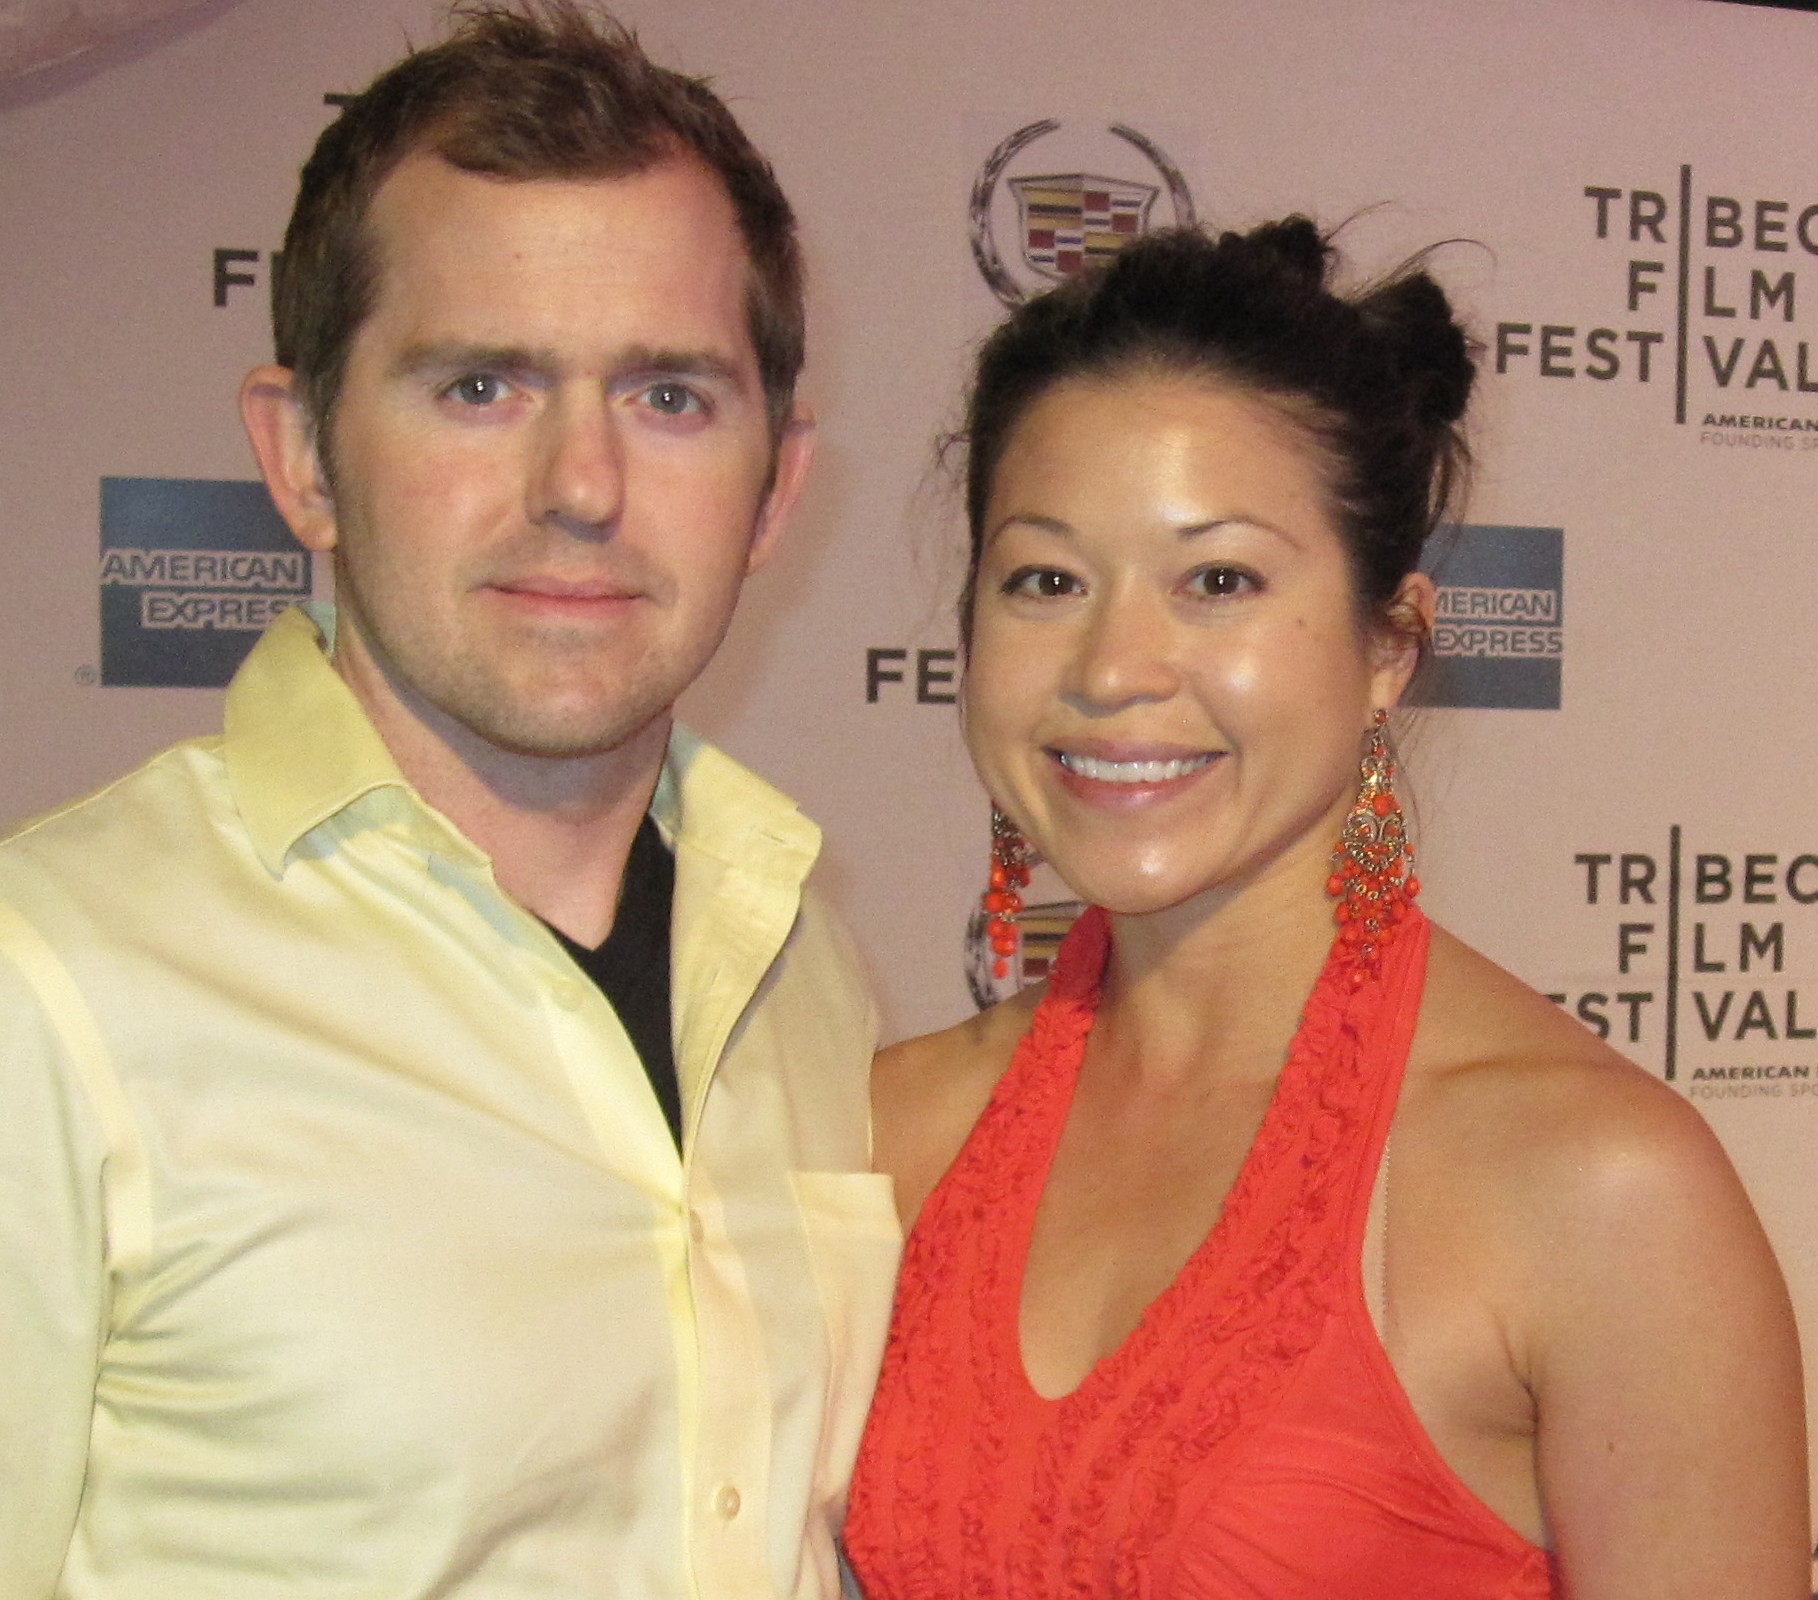 Tribeca Film Festival 2012